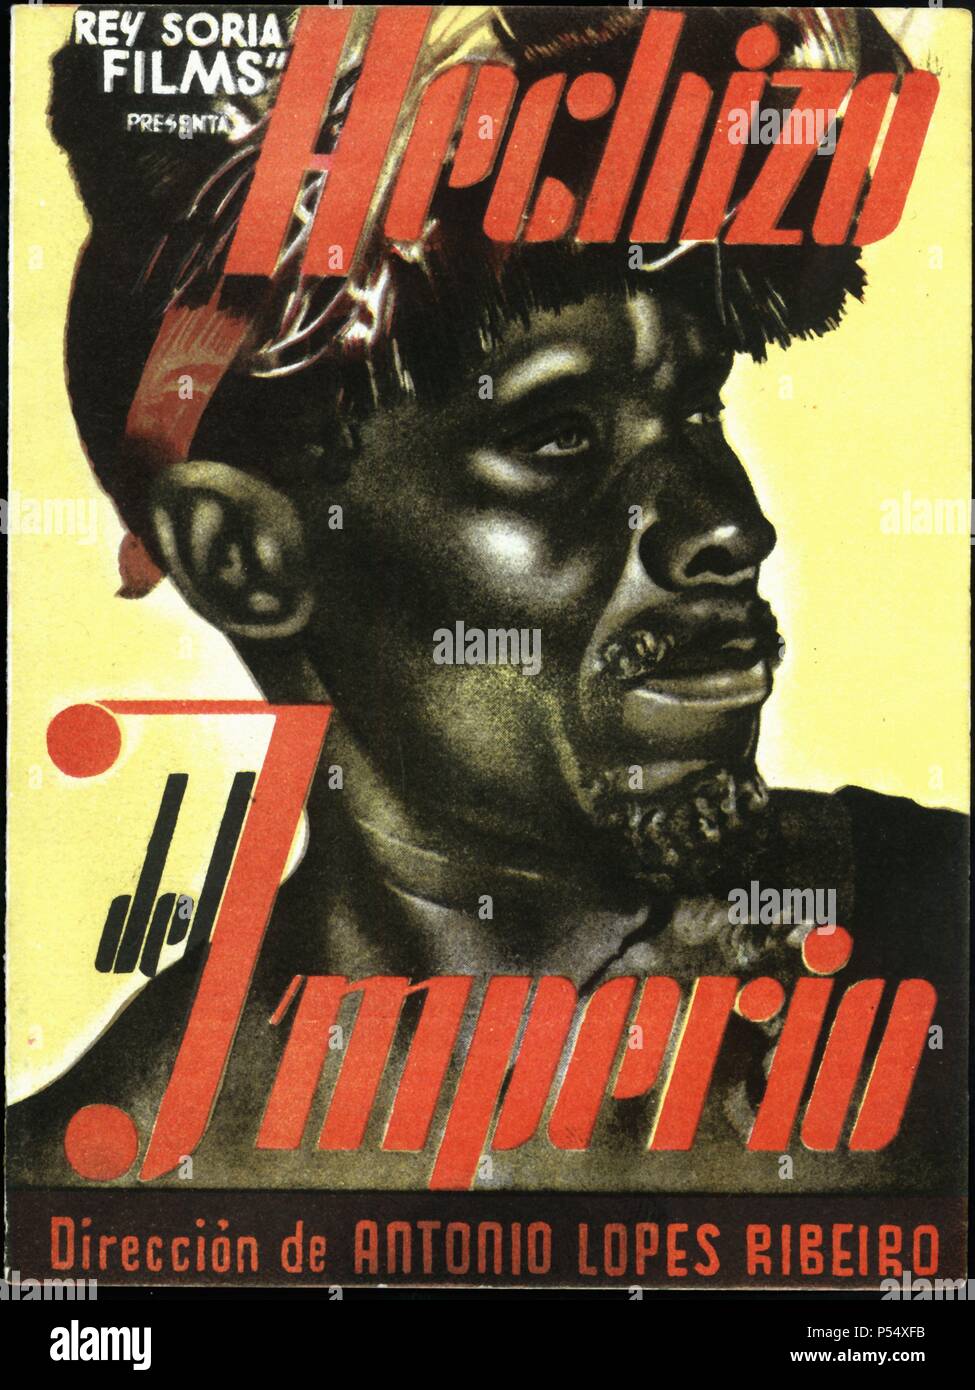 Cartel de la película 'Hechizo del imperio', dirigida por Antonio Lopes Ribeiro. Año 1944. Stock Photo